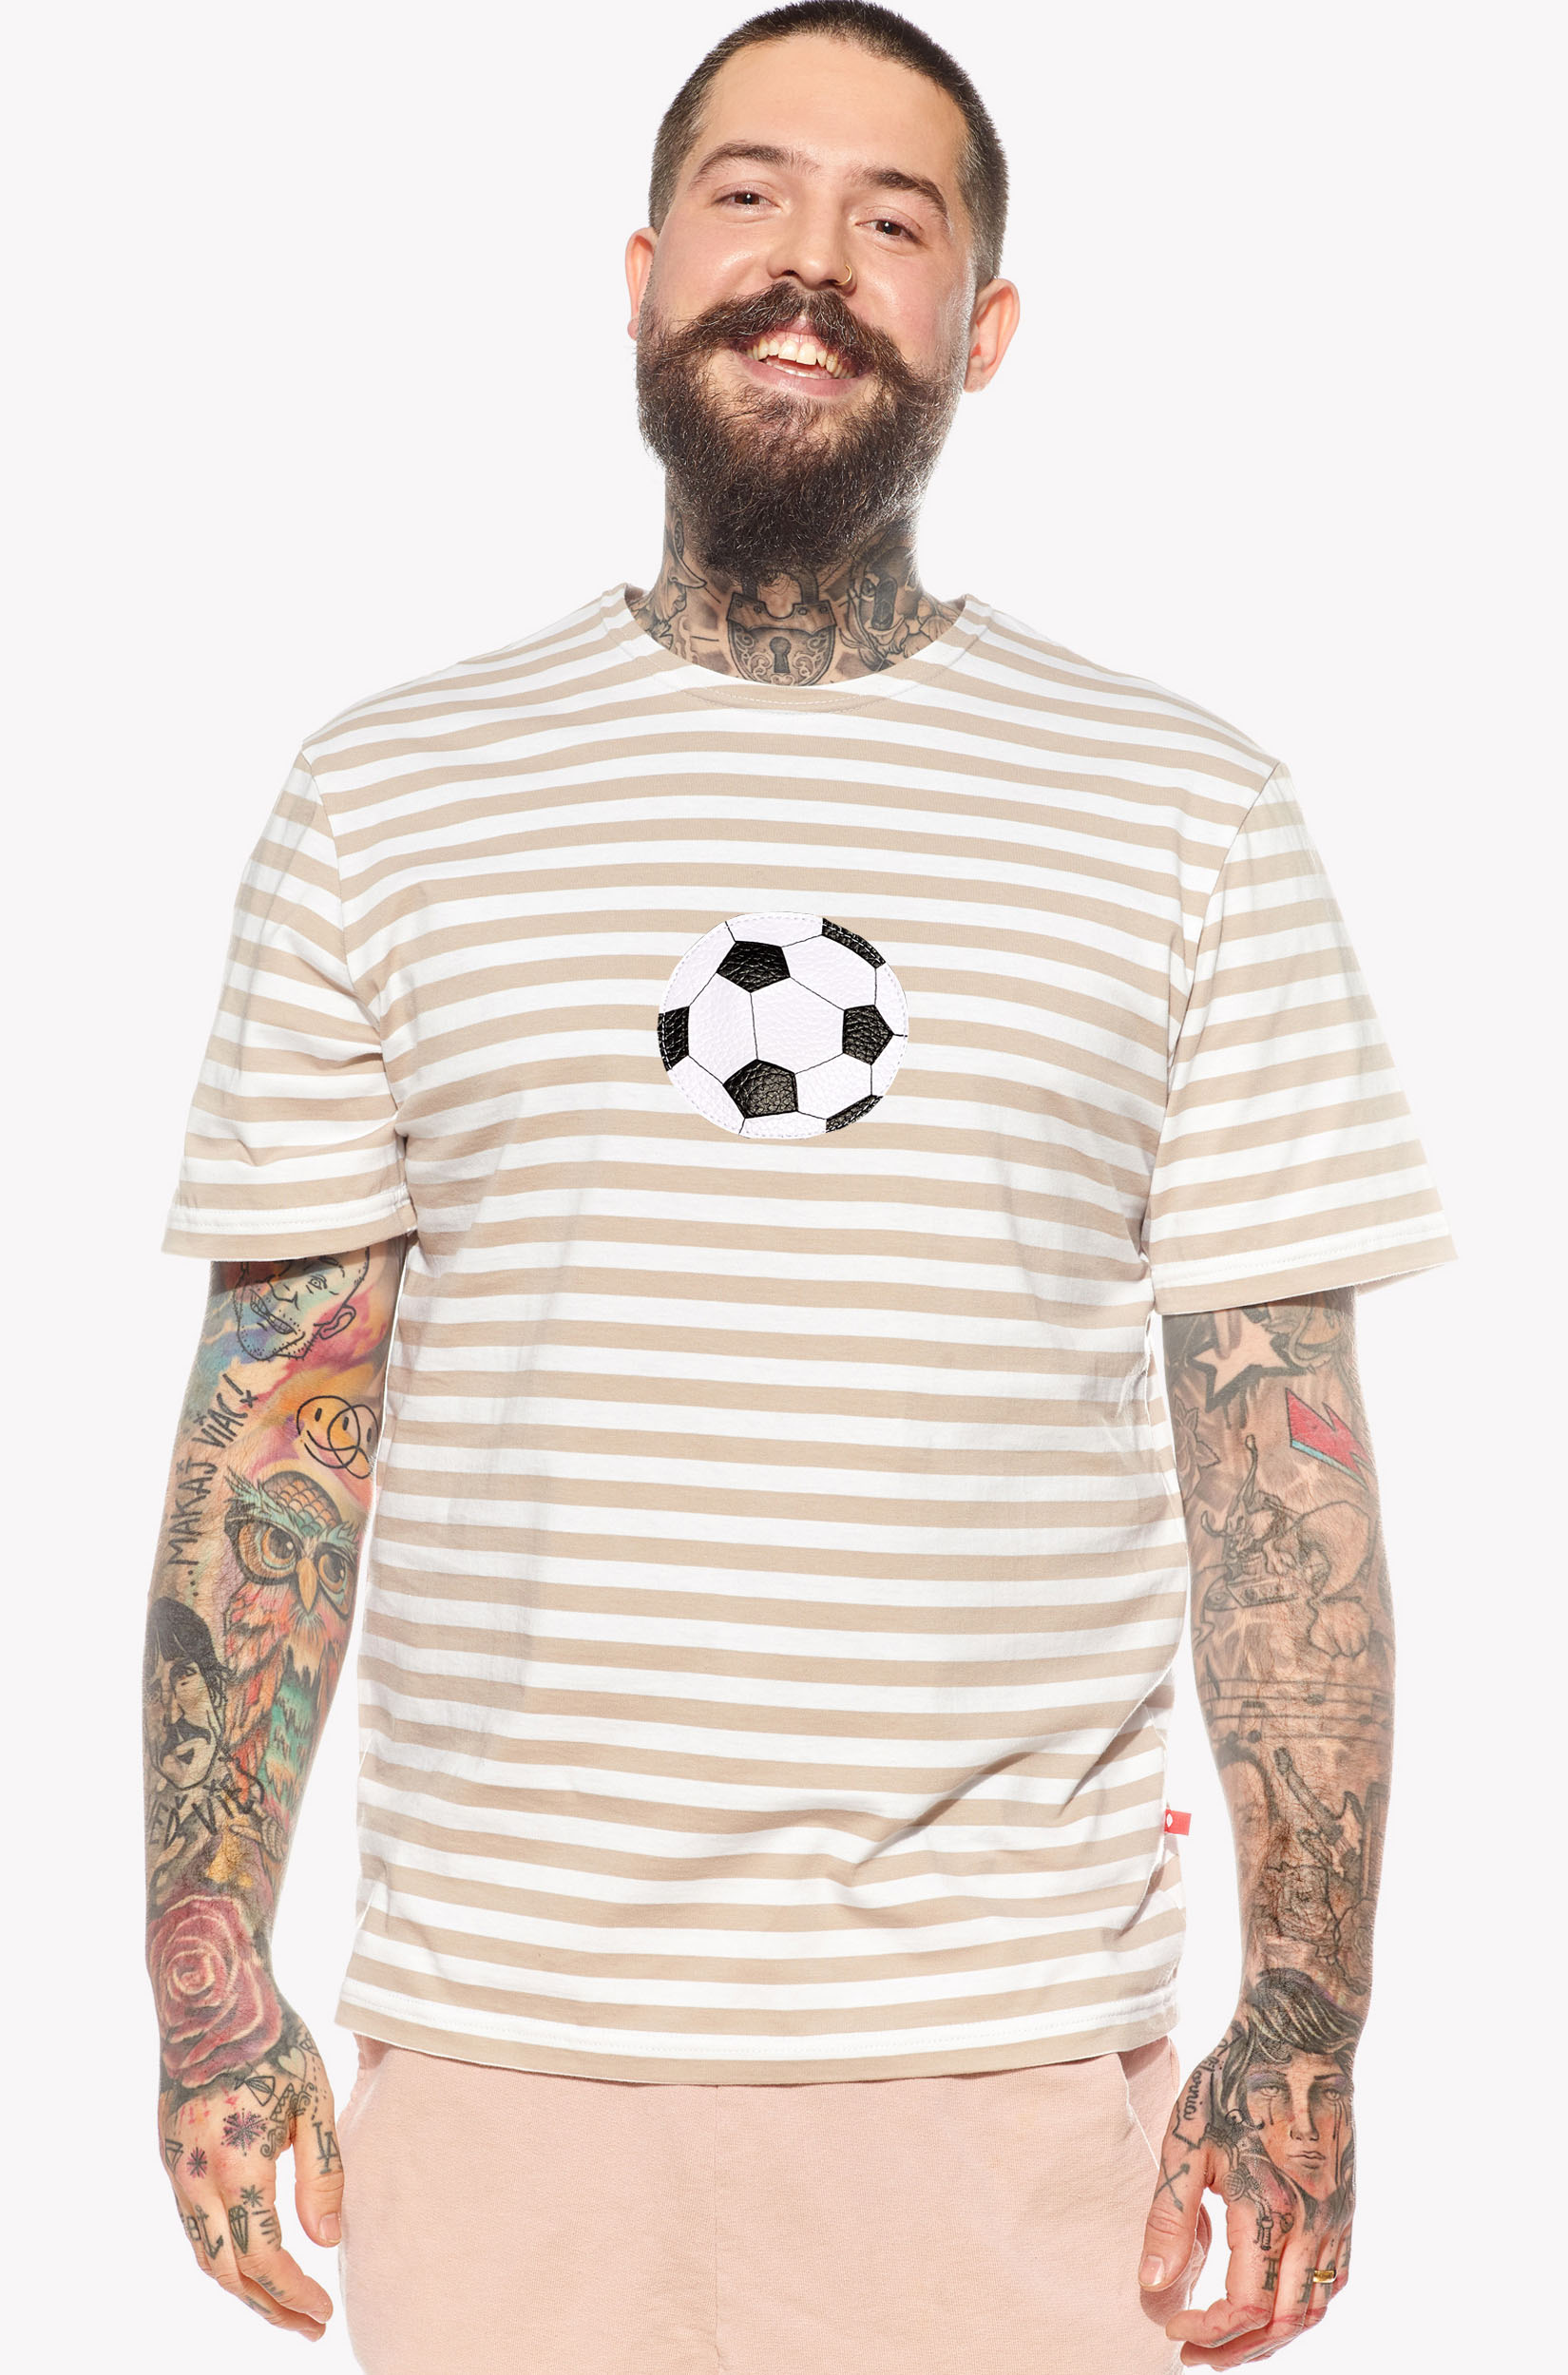 Pólók focilabdával